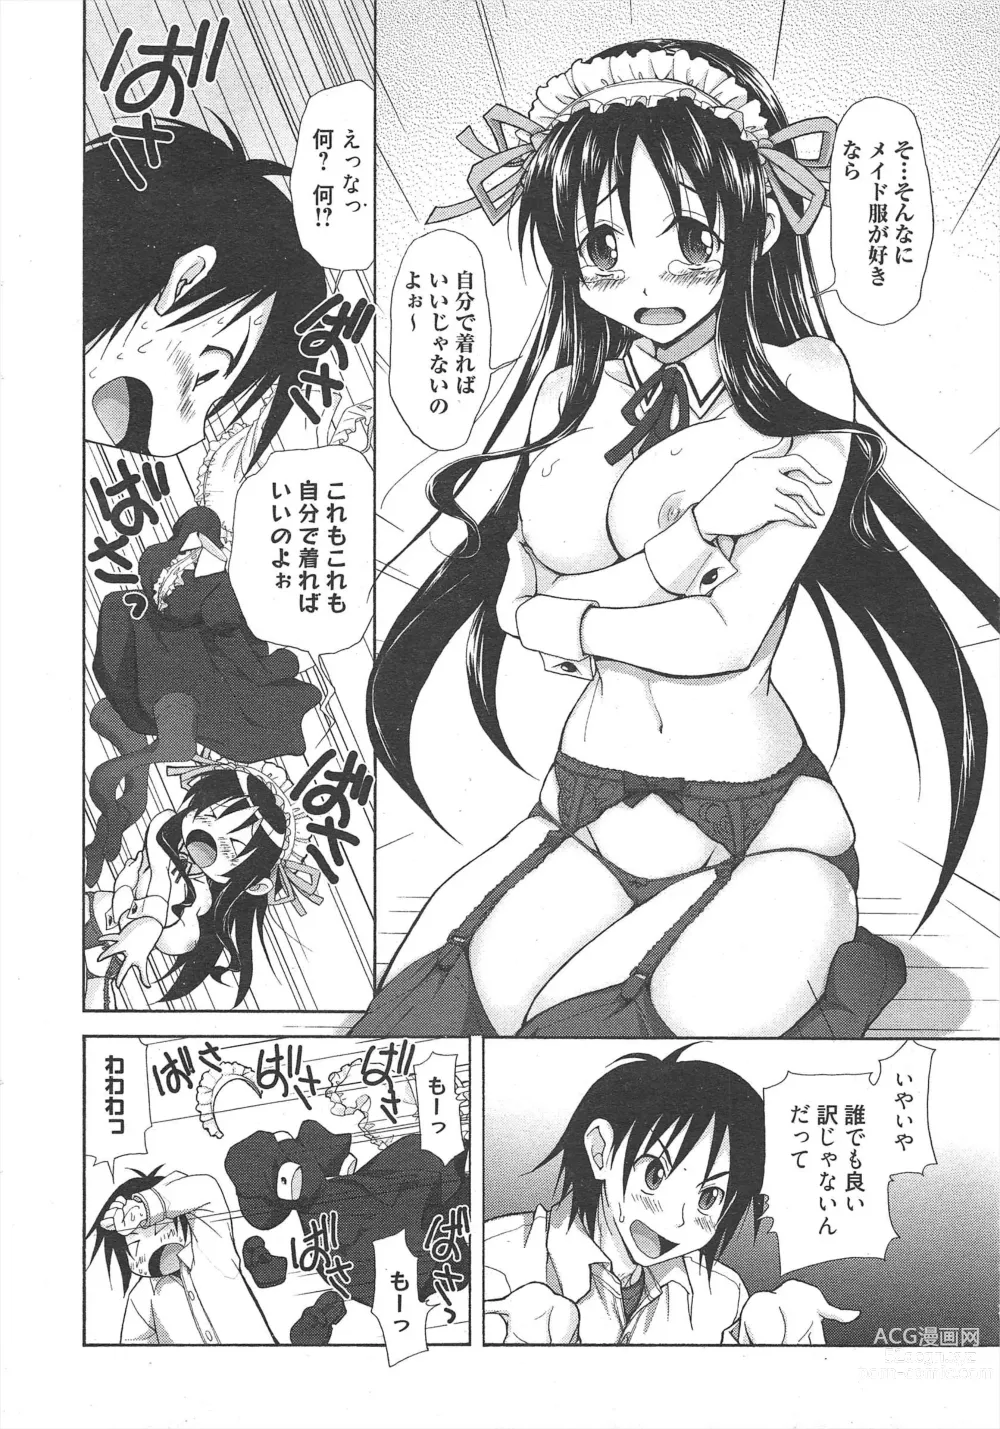 Page 14 of manga Manga Bangaichi 2011-08